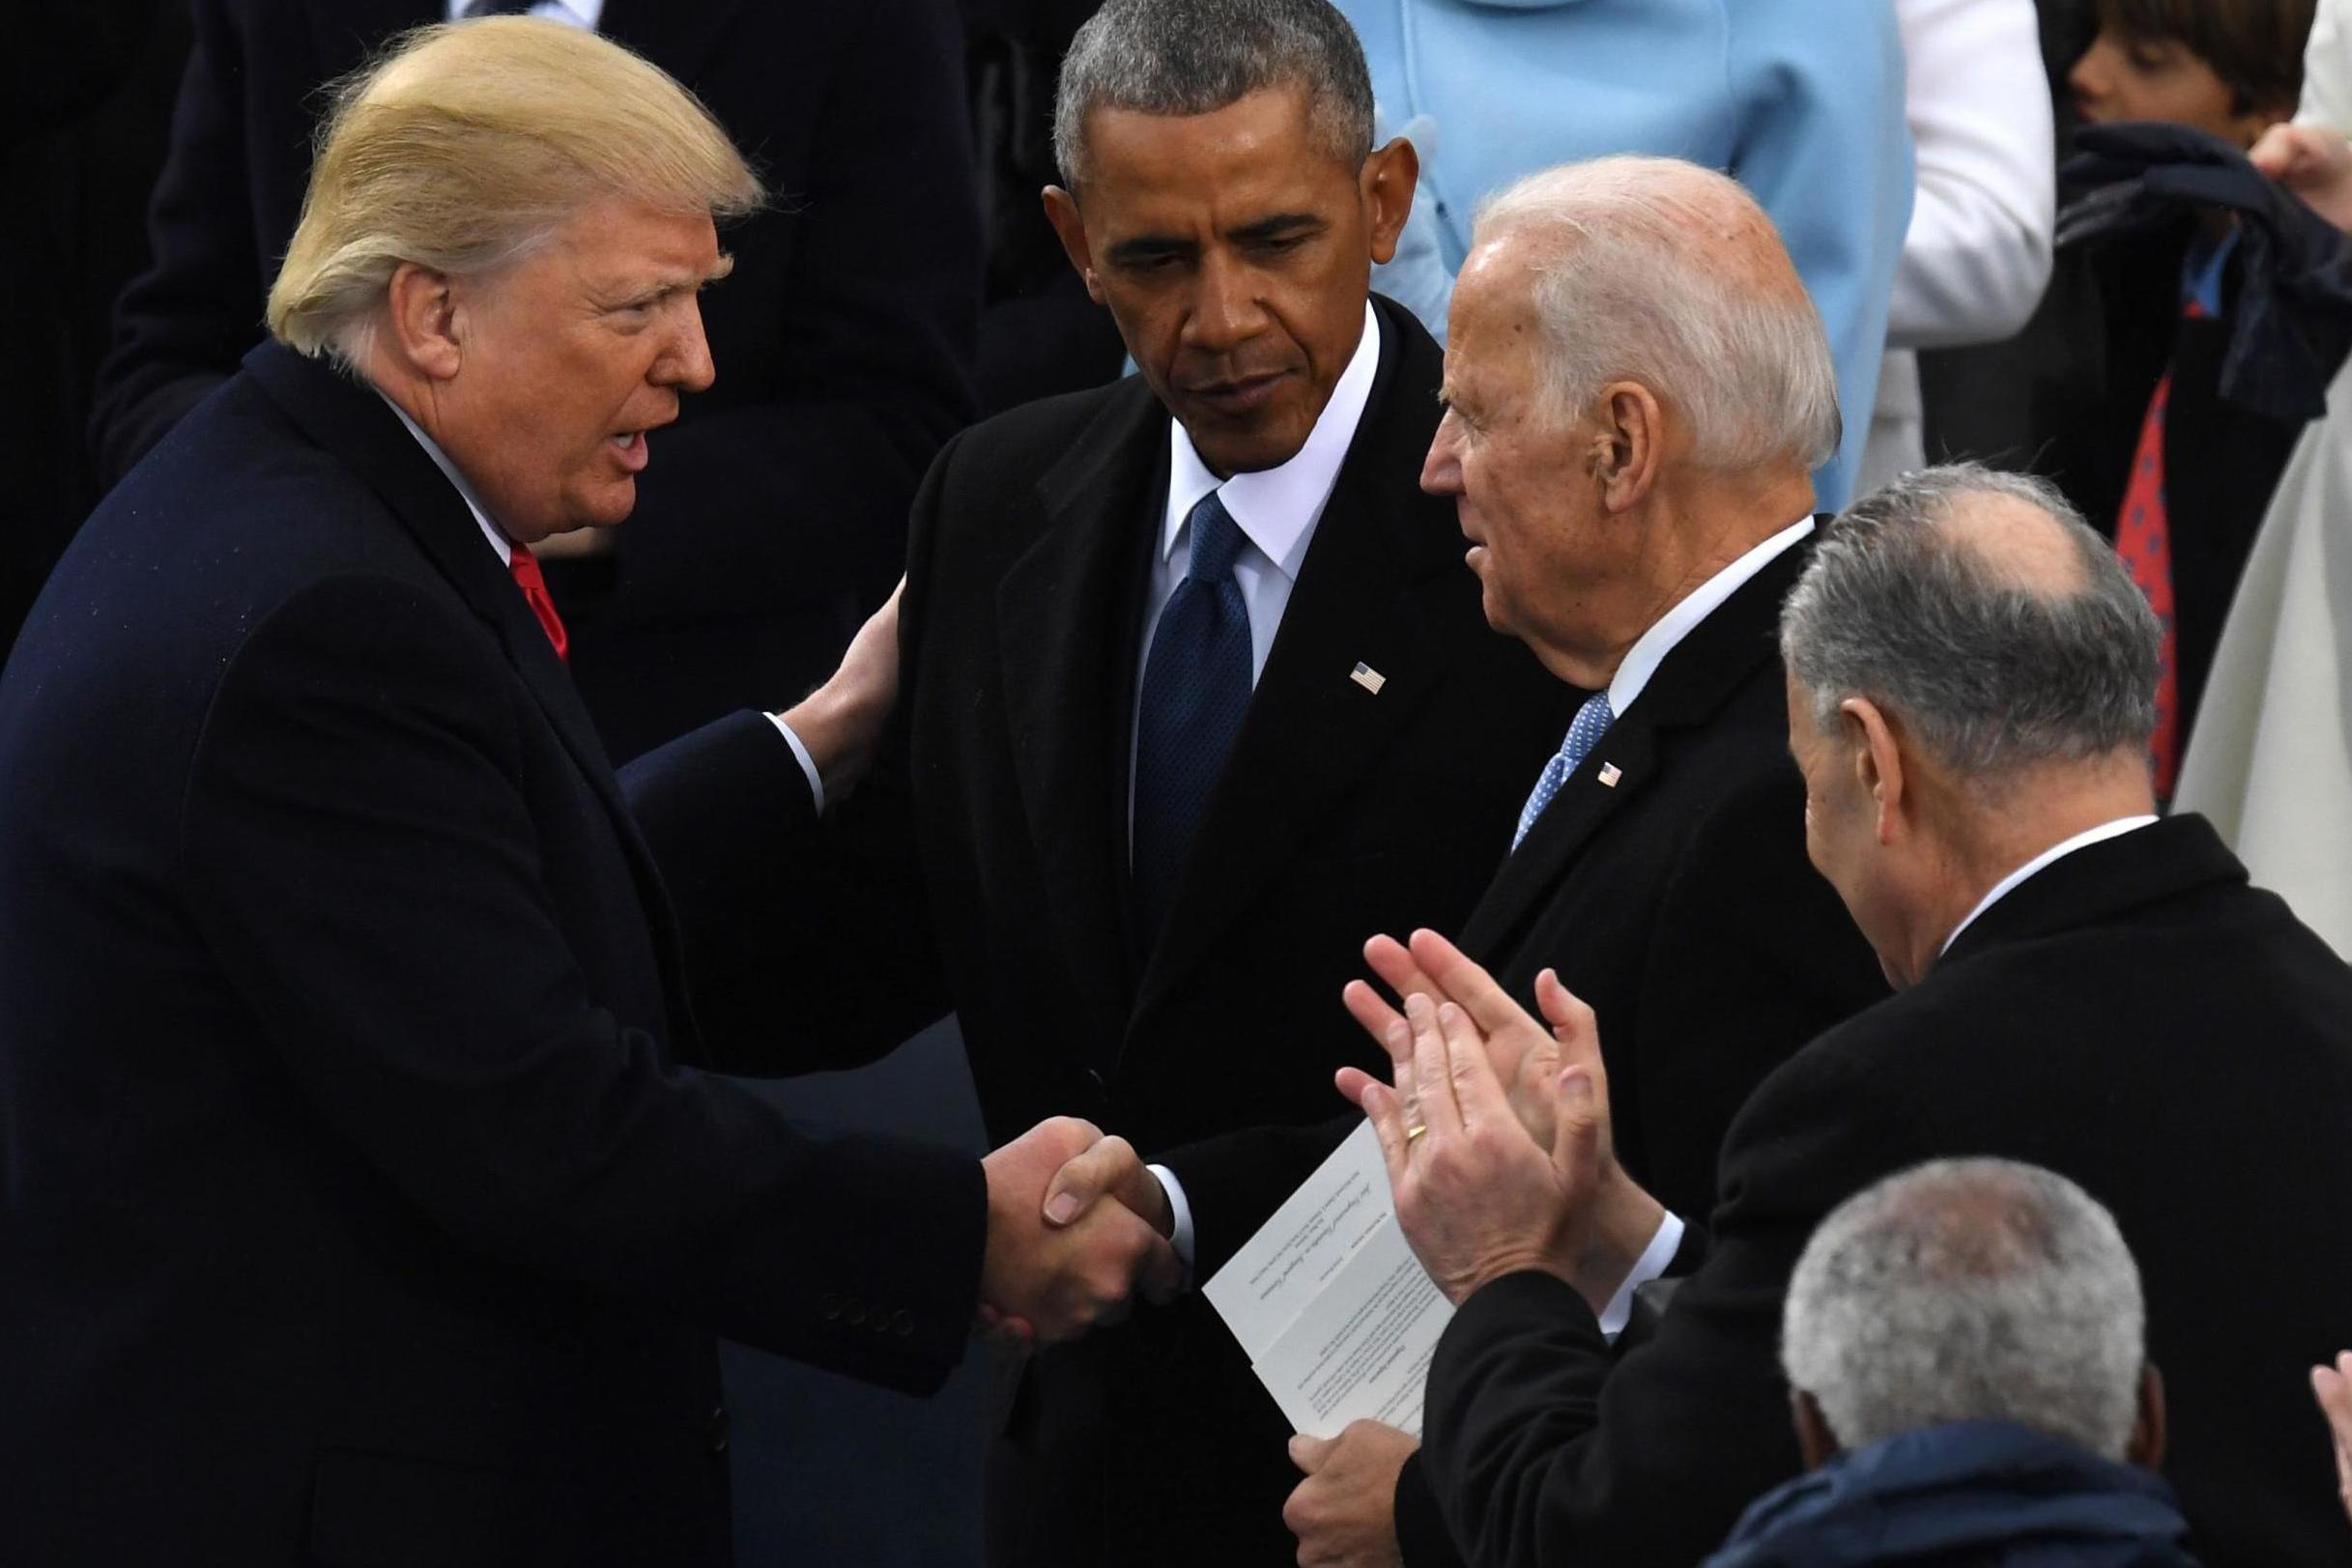 2434x1623, 214 Kb / Дональд Трамп, встреча, рукопожатие, пиджак, президент, Барак Обама, США, Джо Байден